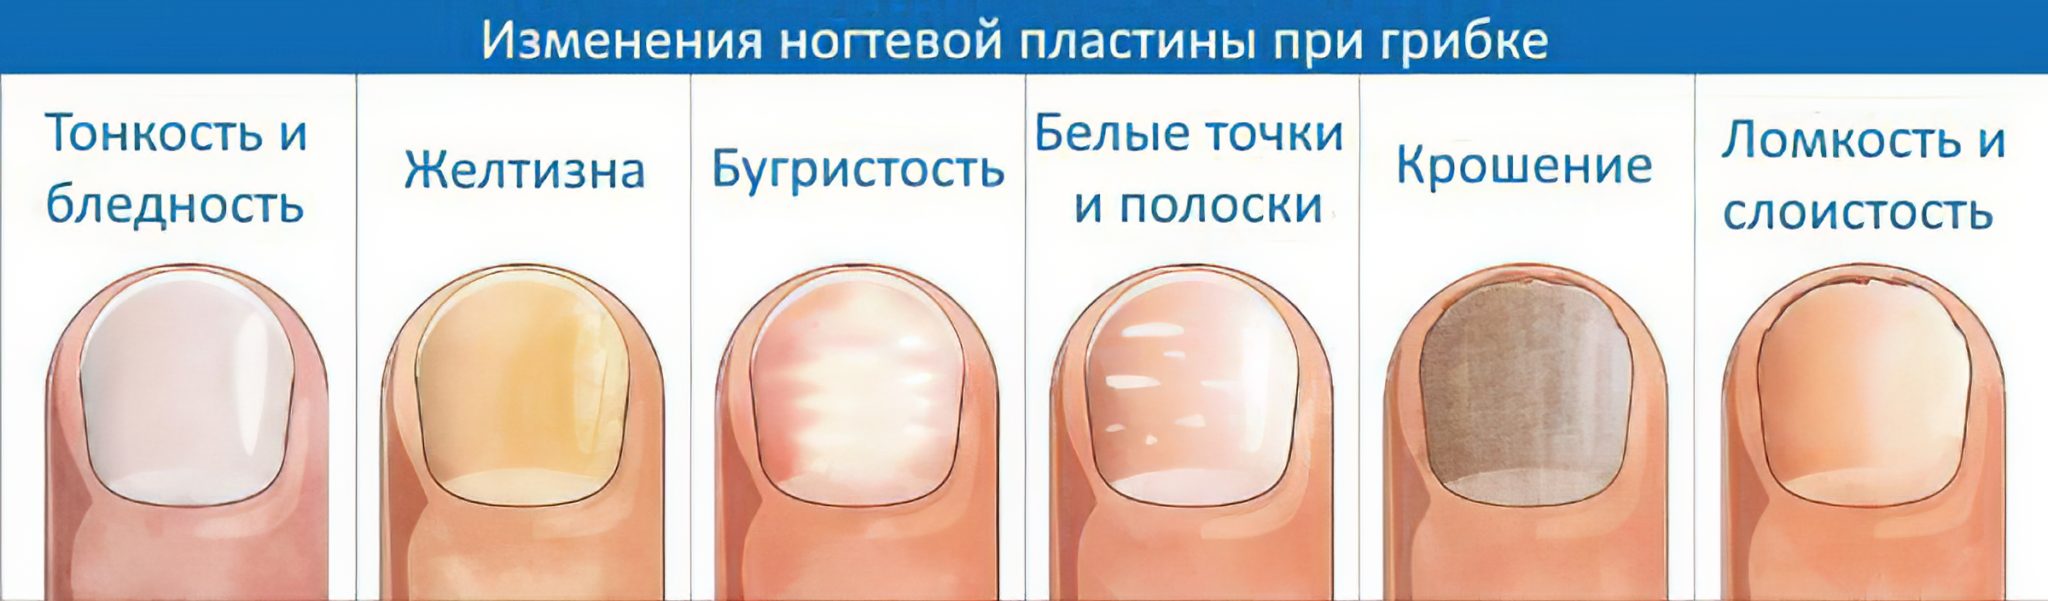 Полоски на ногтях причины вертикальные у женщин. Белые пятна на ногтях ногтей. Белые пятна на ногтях причины.